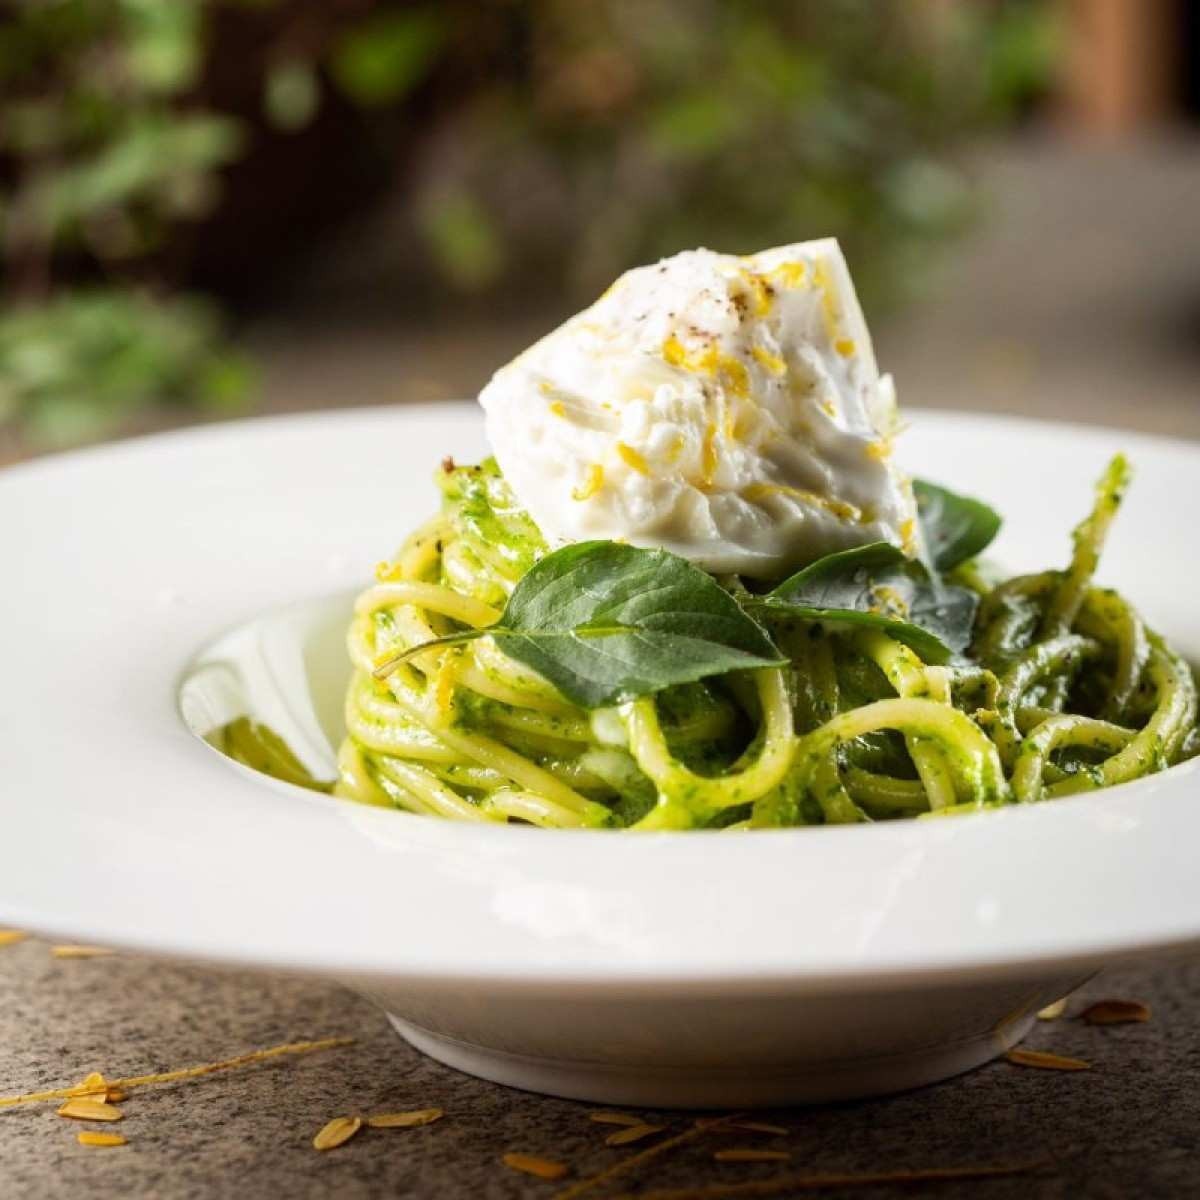 O limão siciliano ganha destaque nos pratos de verão d'O Italiano, entre eles espaguete com pesto de manjericão e burrata cremosa